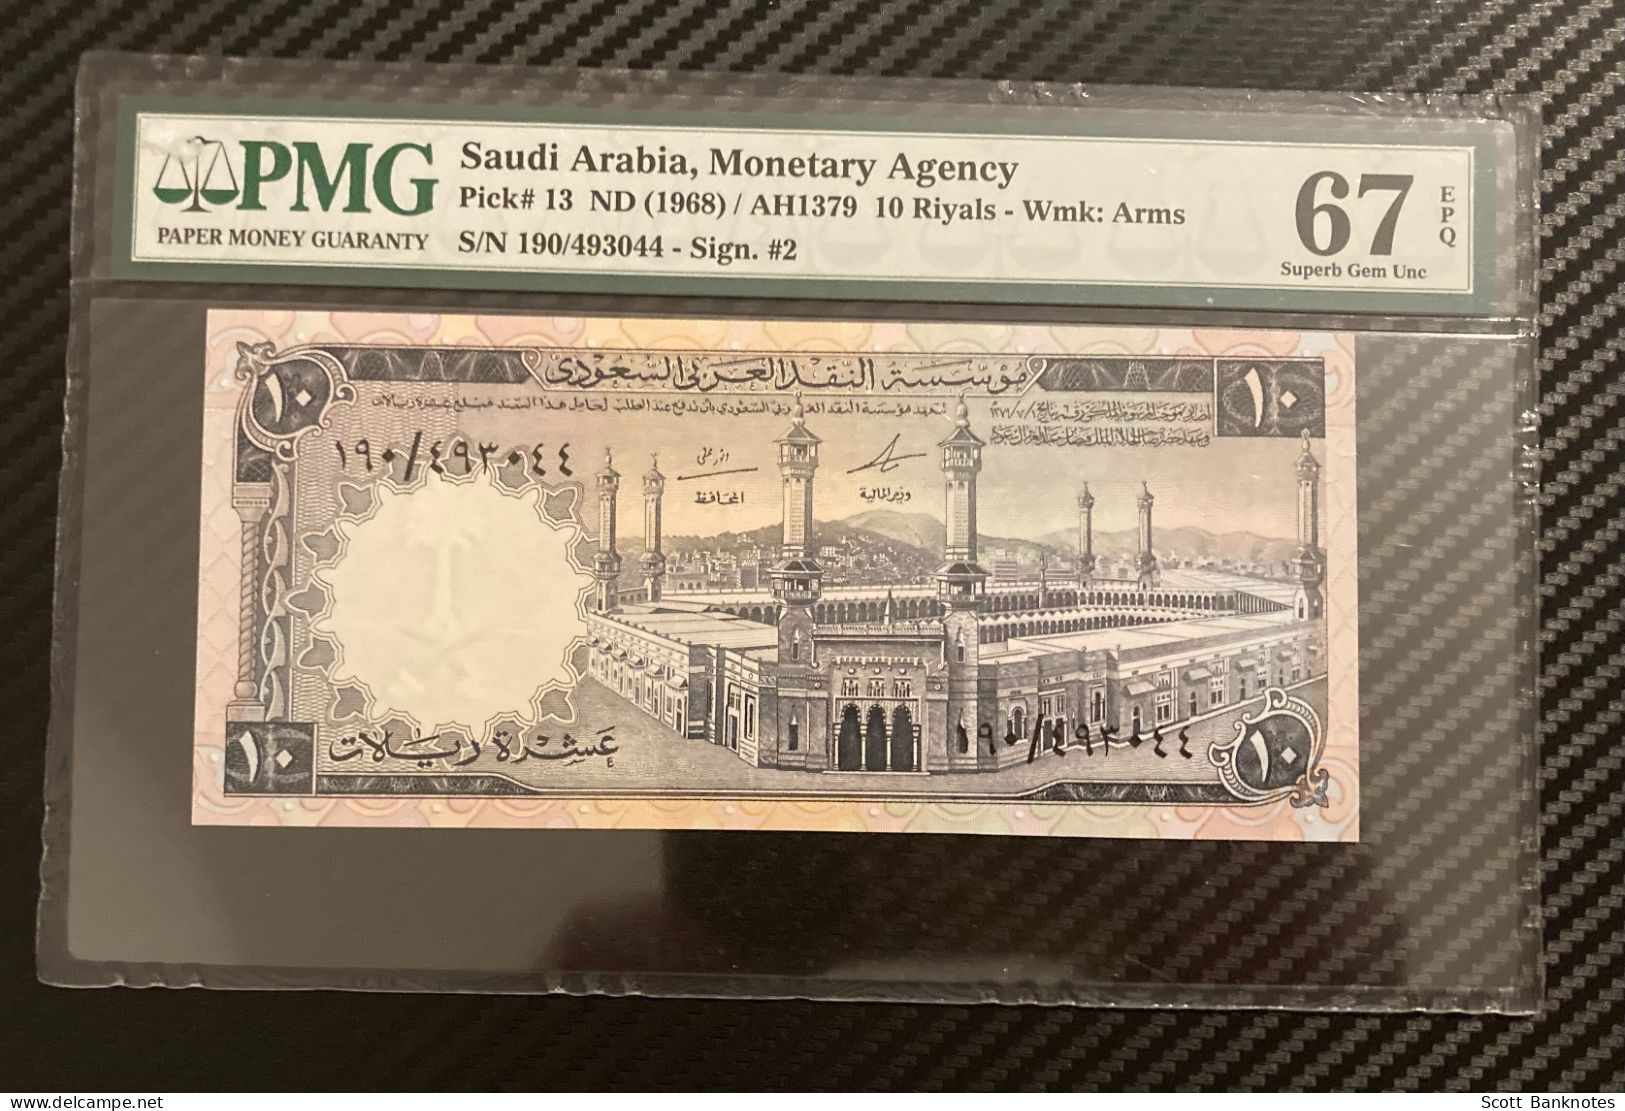 1968, PMG 67 Superb Gem Unc, Saudi Arabia 10 Riyals, Wmk Arms, Pick 13, SN 190 493044 - Arabia Saudita